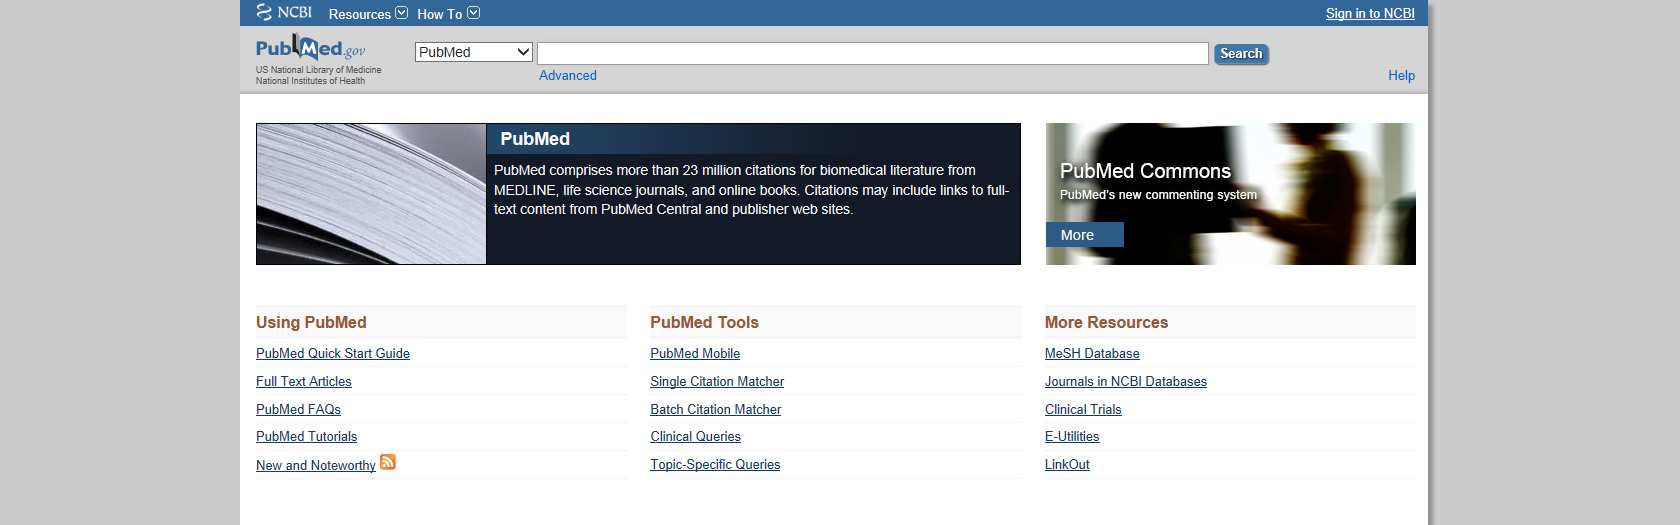 Lilla PubMed-lathunden Om databasen PubMed PubMed är en databas som produceras av National Center for Biotechnology Information (NCBI) vid National Library of Medicine (NLM) i USA.